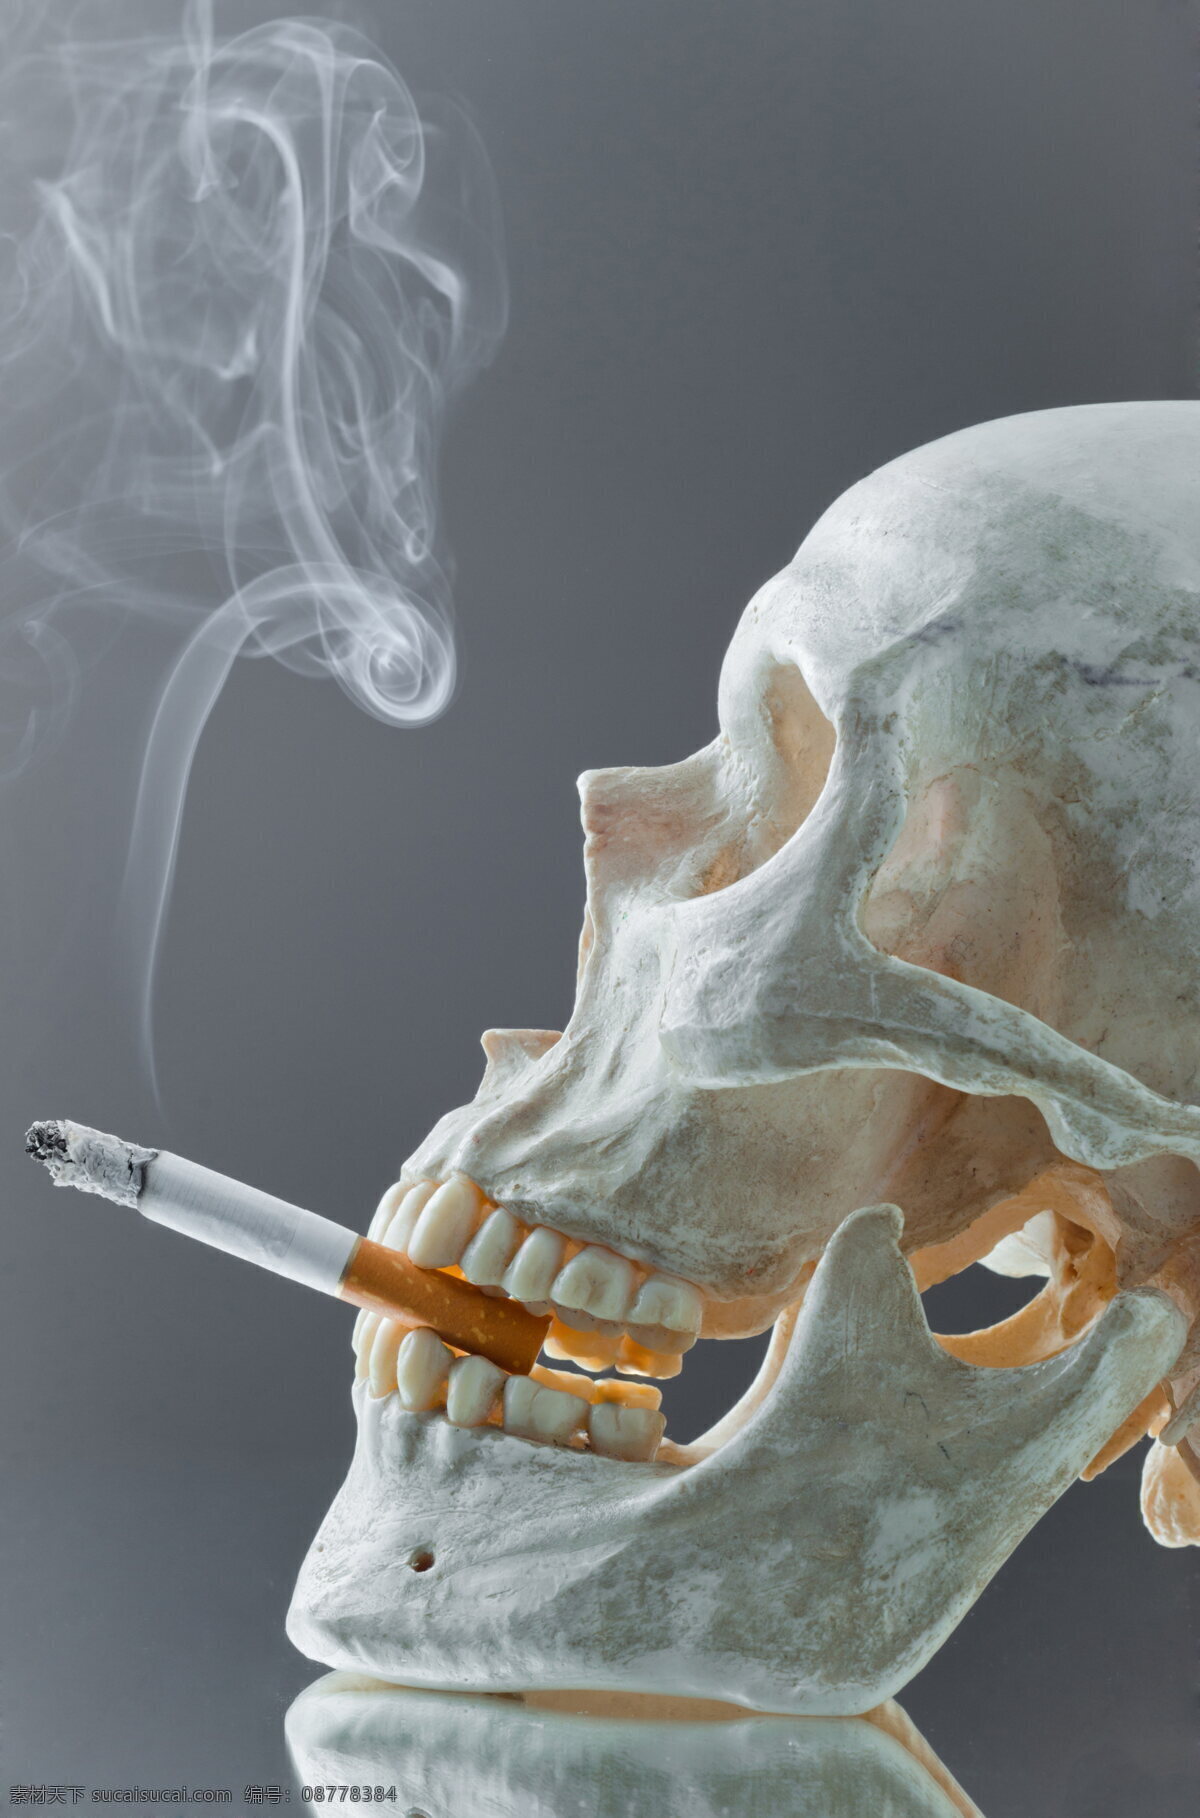 吸烟 禁止吸烟 请勿吸烟 吸烟有害健康 香烟包装盒 骷髅头